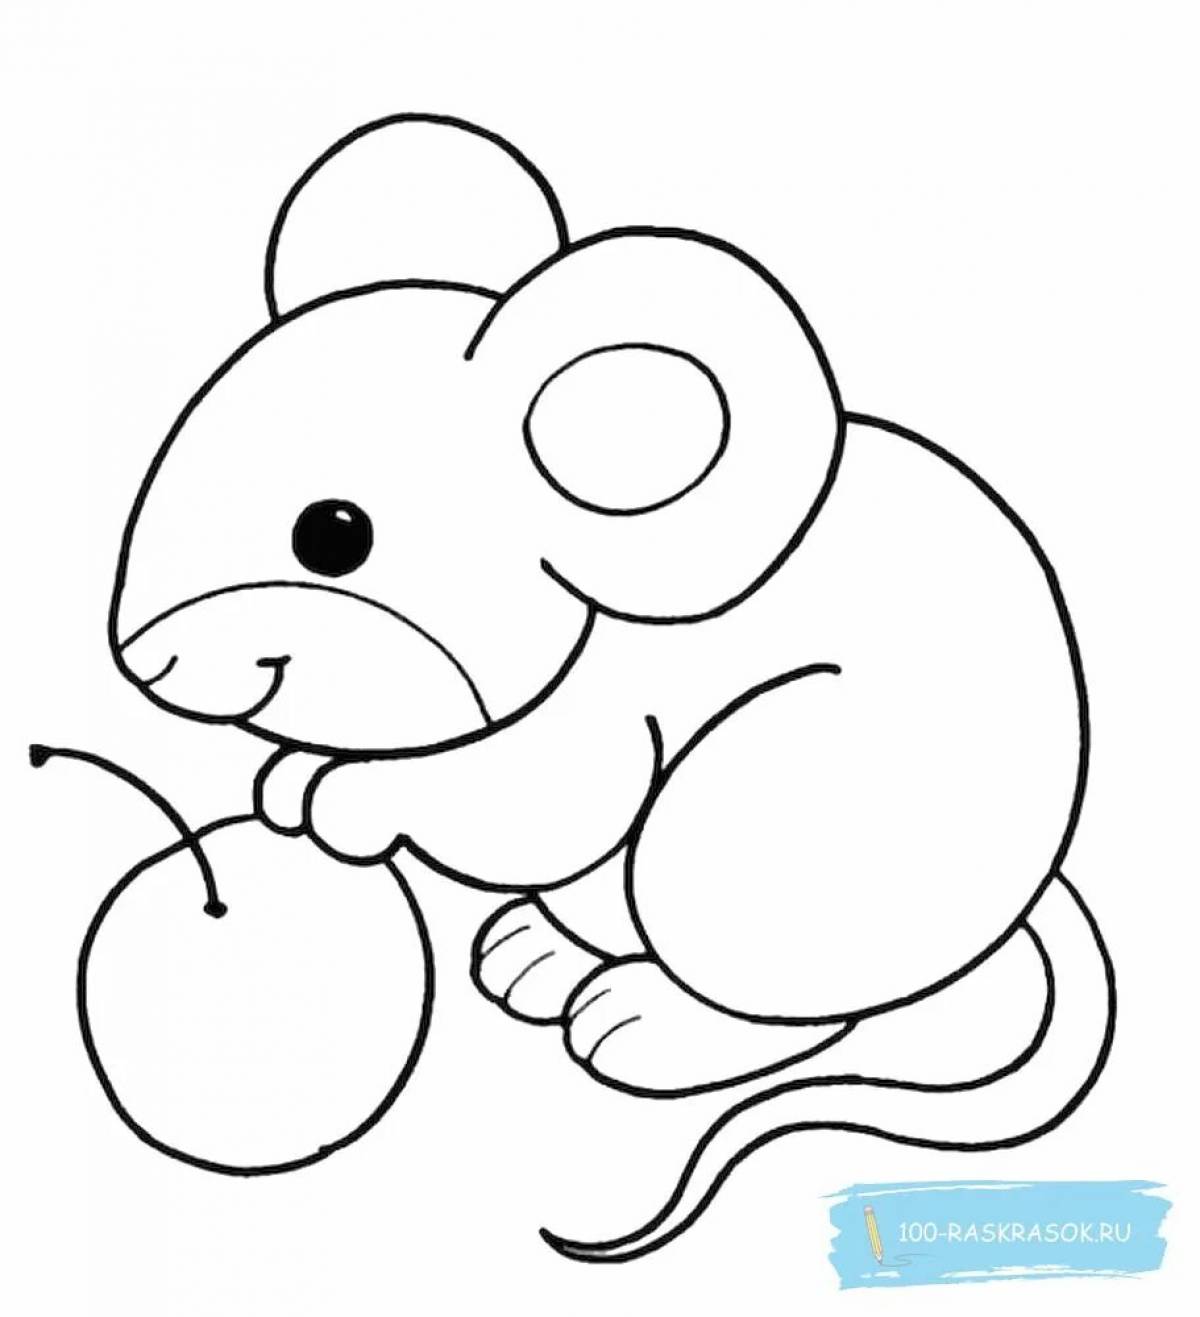 Ослепительная раскраска мышь для детей 3-4 лет